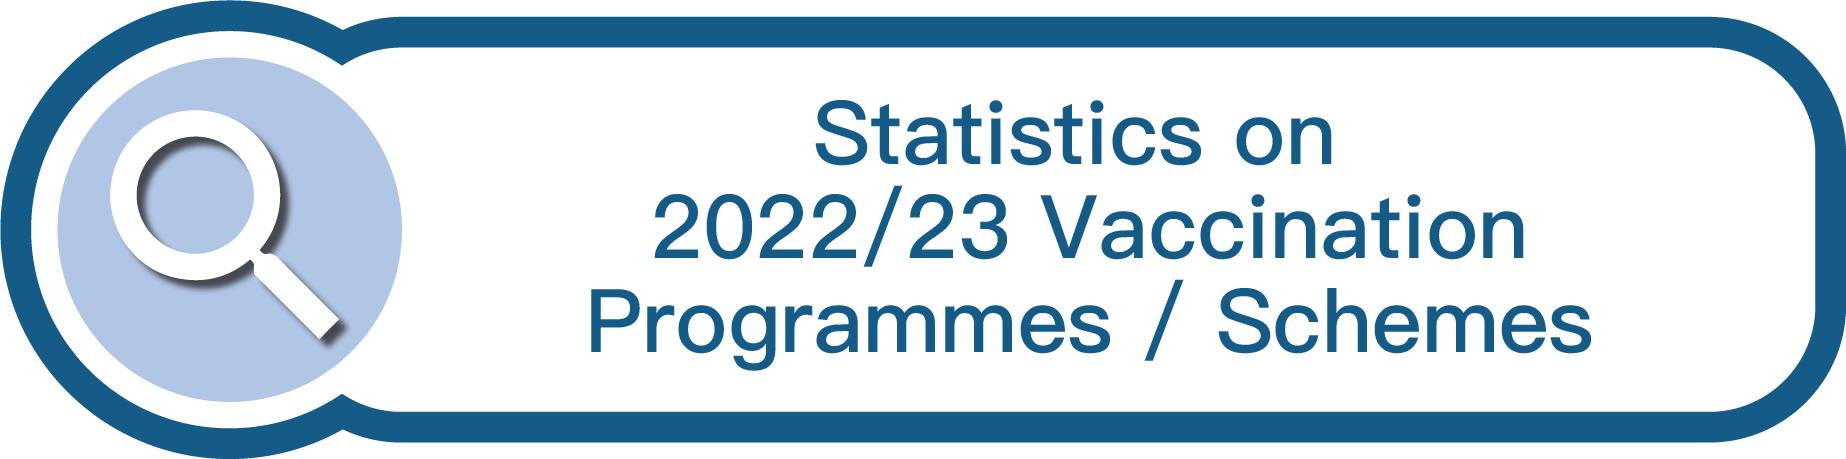 Statistics on 2021/22 Vaccination Programmes/Schemes